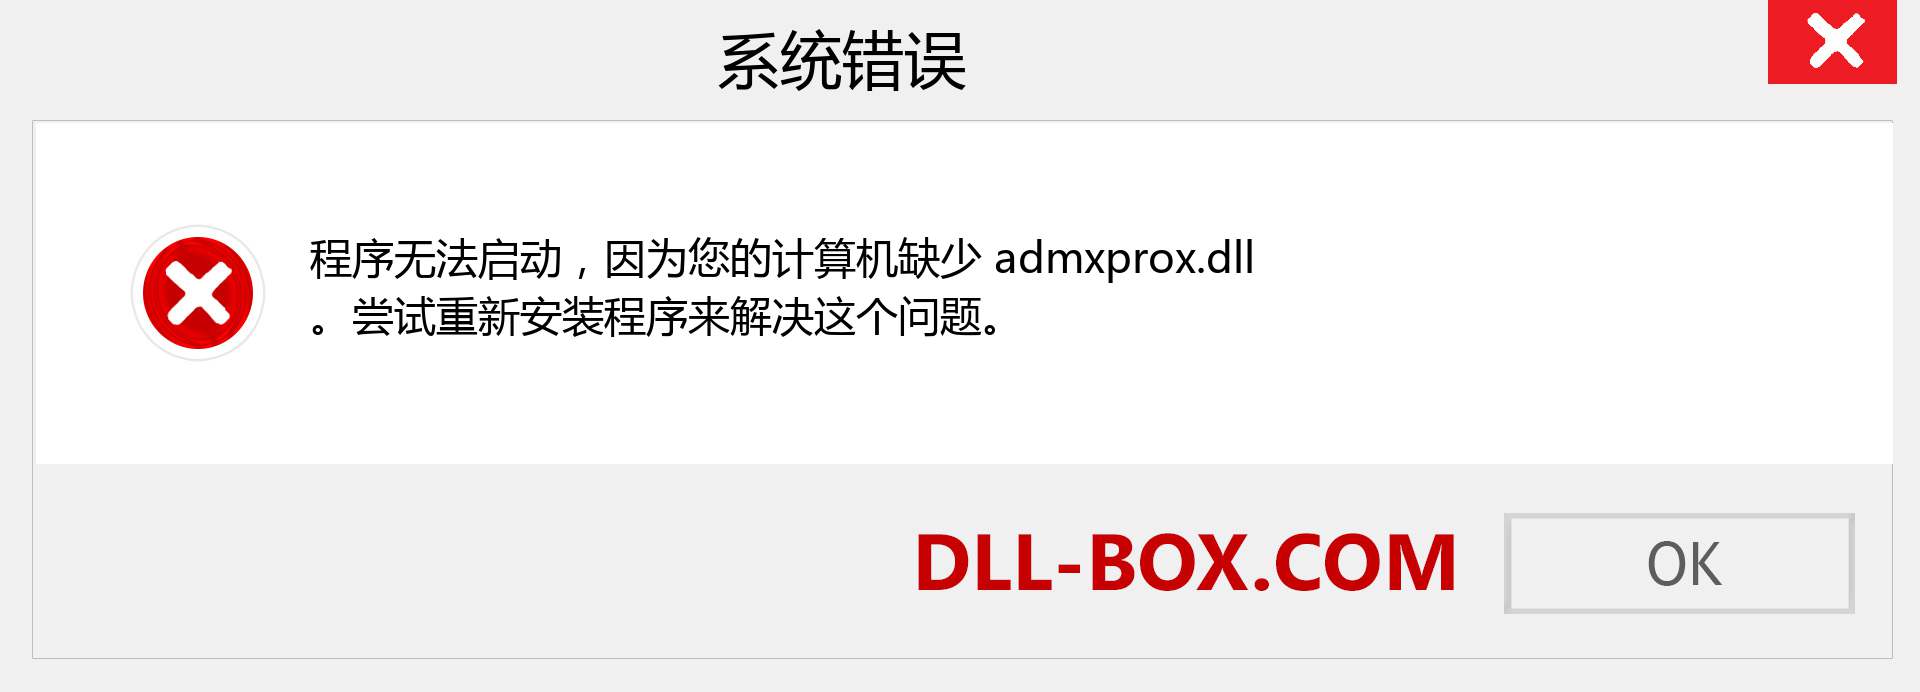 admxprox.dll 文件丢失？。 适用于 Windows 7、8、10 的下载 - 修复 Windows、照片、图像上的 admxprox dll 丢失错误